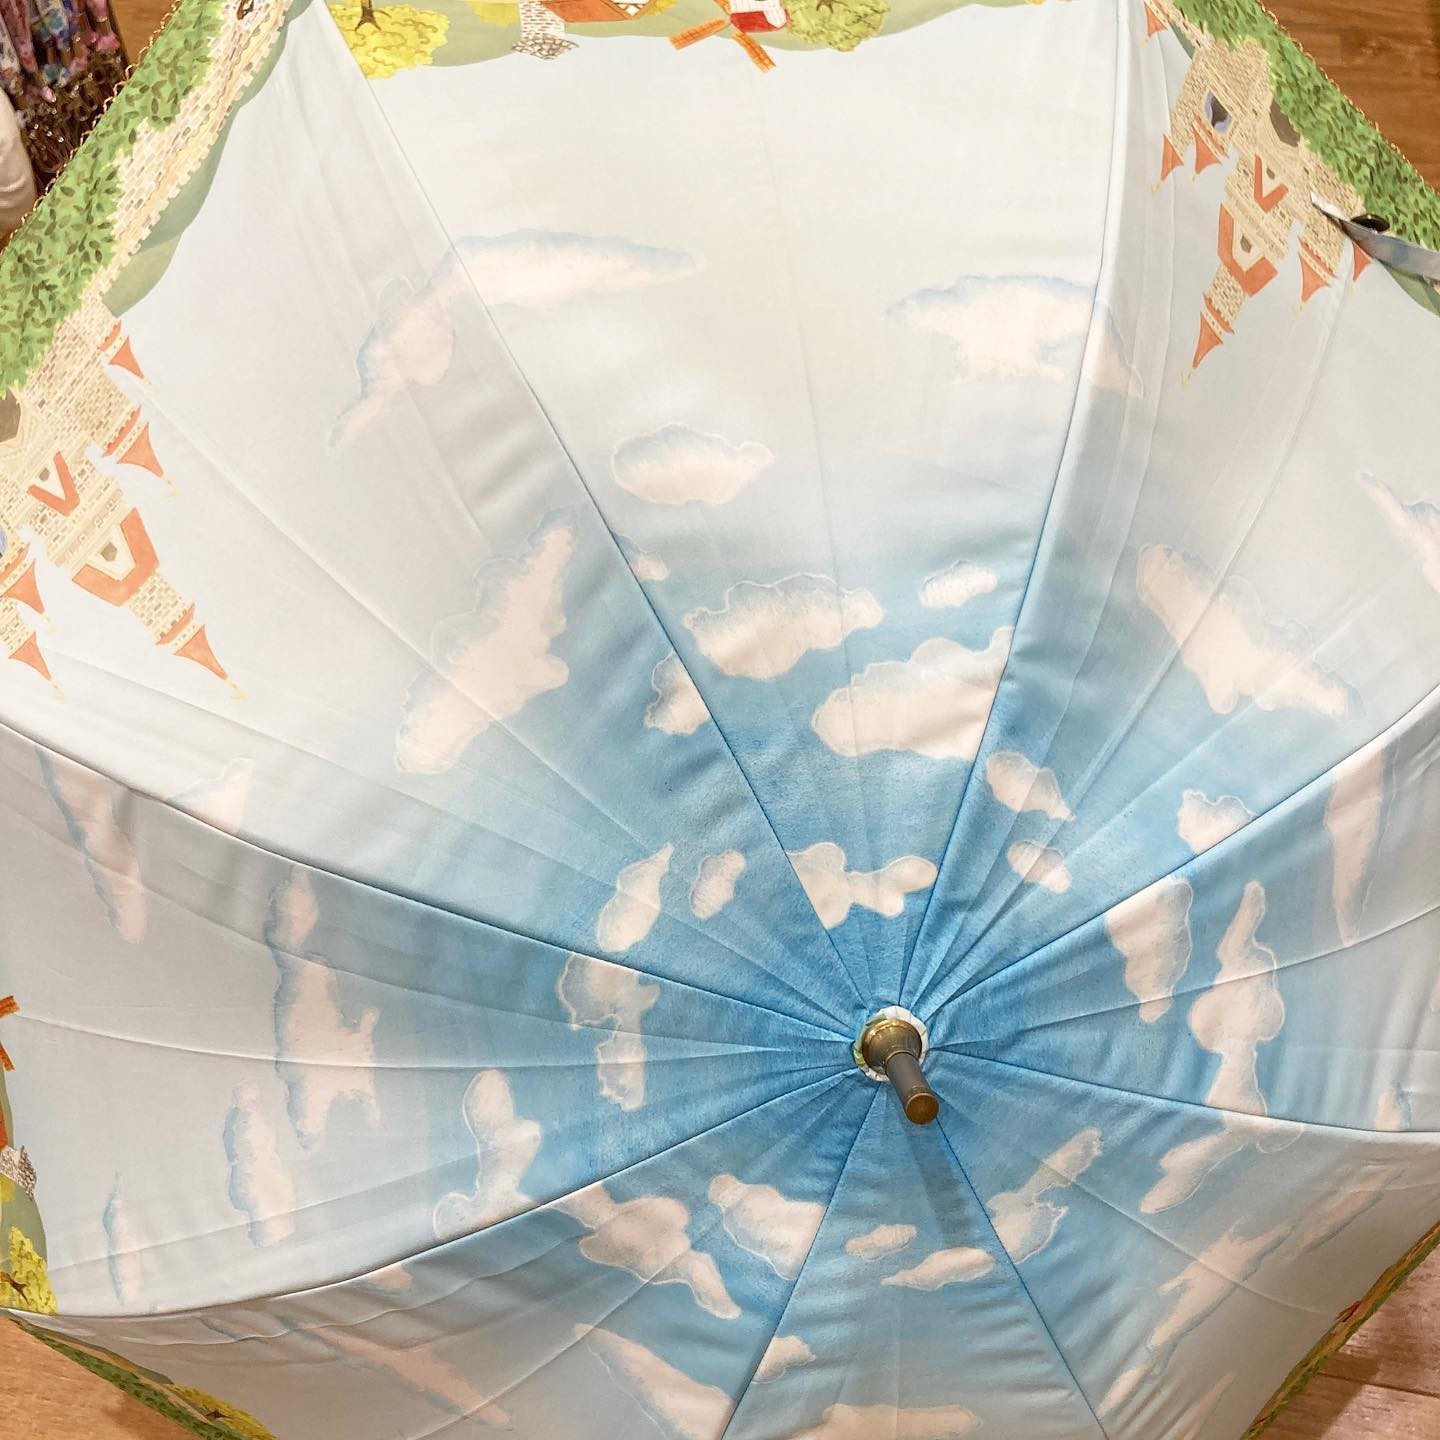 前回のチップとデールの傘立てに立ってた傘！ 日傘「ミッキーの巨人退治」ライセンスアウトして2年？以上経ってる？？最高のデザインで傘を作ってくれていた、個人的にオススメで毎年テンションを上げてくれていたメーカー、小川さんの商品ですアリエルとか、ラプンツェルとか、ピーターパンとか…いい商品が山ほどありましたもう一度ディズニーに戻って来て欲しい！ディズニーの傘の中では最高のメーカーさんでした(個人比)ここのデザインを他のメーカーさんに見せて、こうやって作って欲しい！！と何度言ったことか… カムバーック！！！🤣流山おおたかの森ではこれが最後の1本！ 新三郷の店にはスチームボートとピーターパンが1本ずつありました！消え失せてしま前にチェックしてみてください！！#ザッカニア #ZACCANIA #ディズニー #DISNEY #ミッキーマウス #mickeymouse #小川傘 #巨人退治#こびとたちがつくったお店#流山おおたかの森#流山おおたかの森sc#流山市#流山#雑貨#雑貨屋#雑貨のある暮らし#ナガレヤマプラス#rirakkuma#ZACCANIA#nagareyama#ig_japan#instagood#instalike